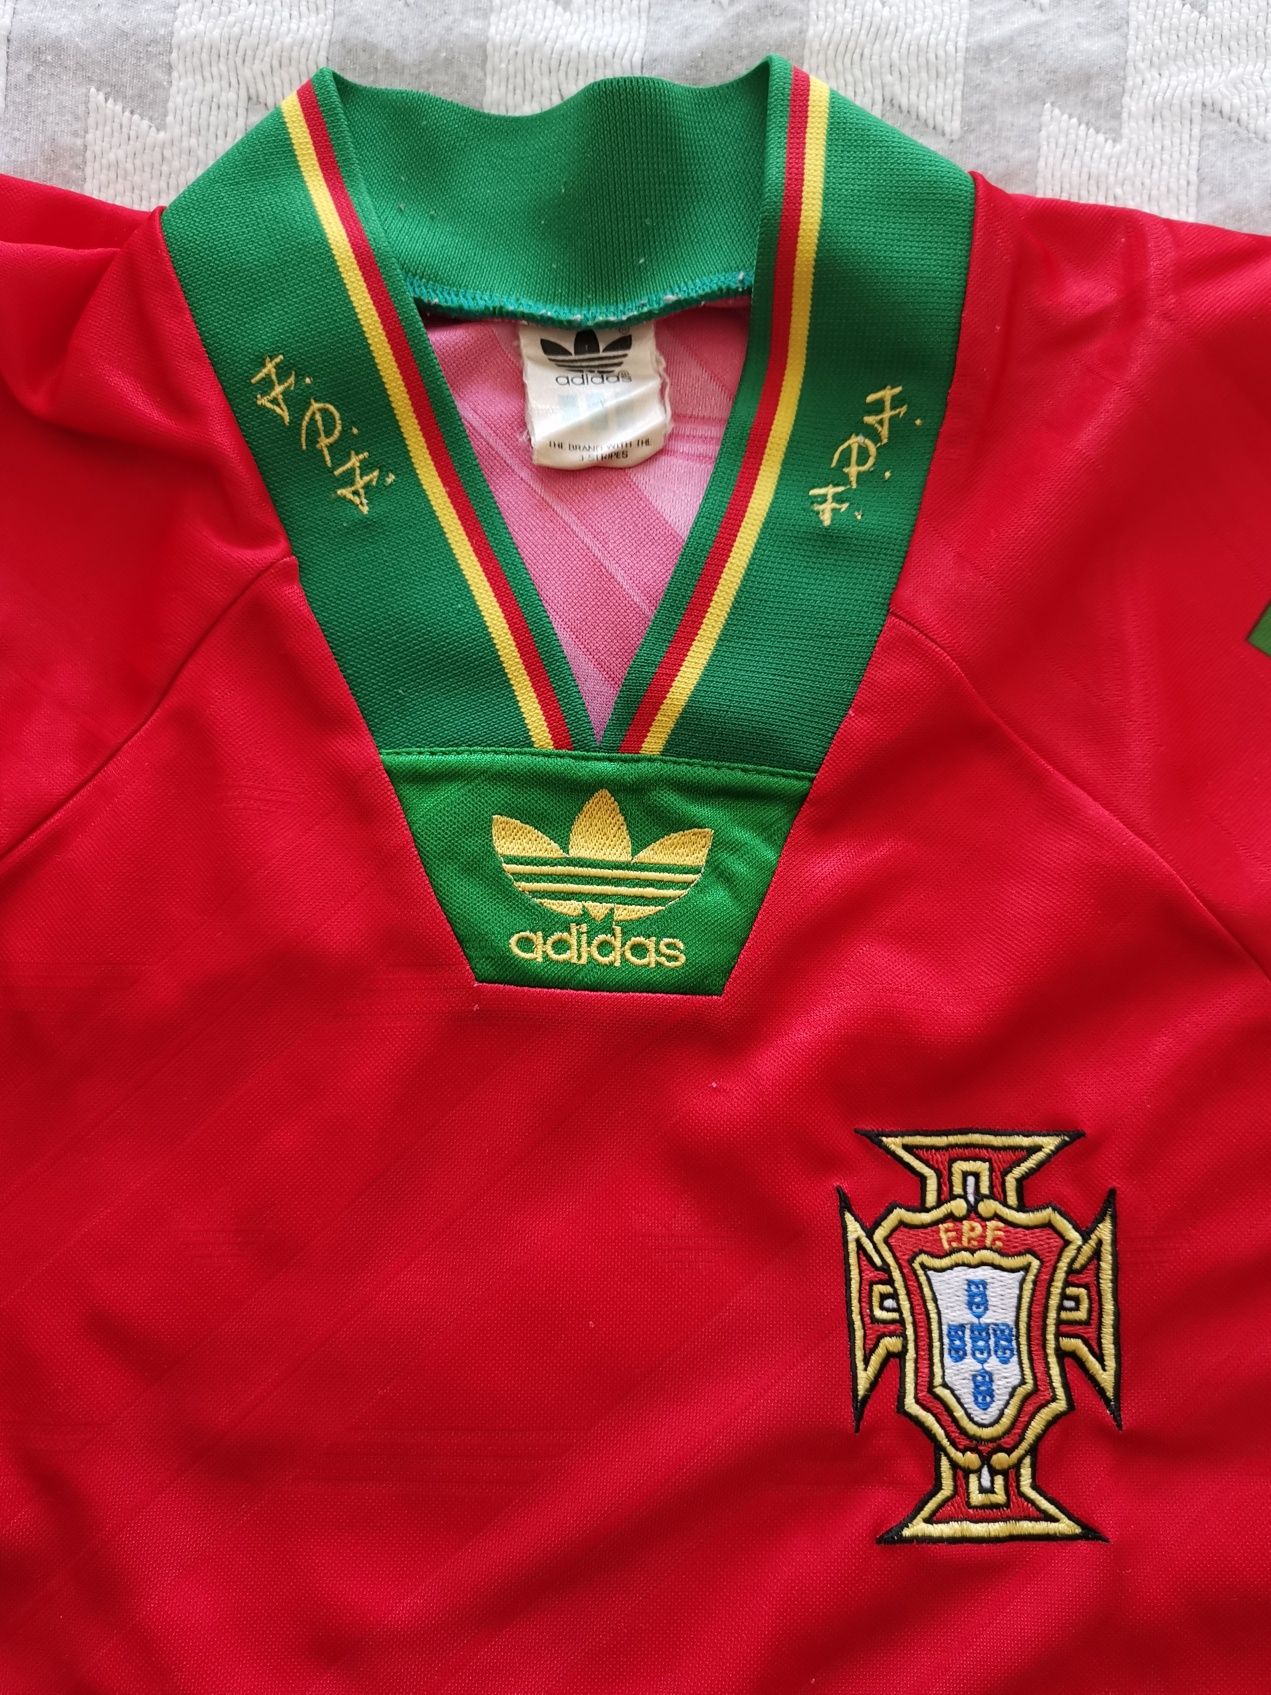 Camisola seleção Portugal 1983 adidas original